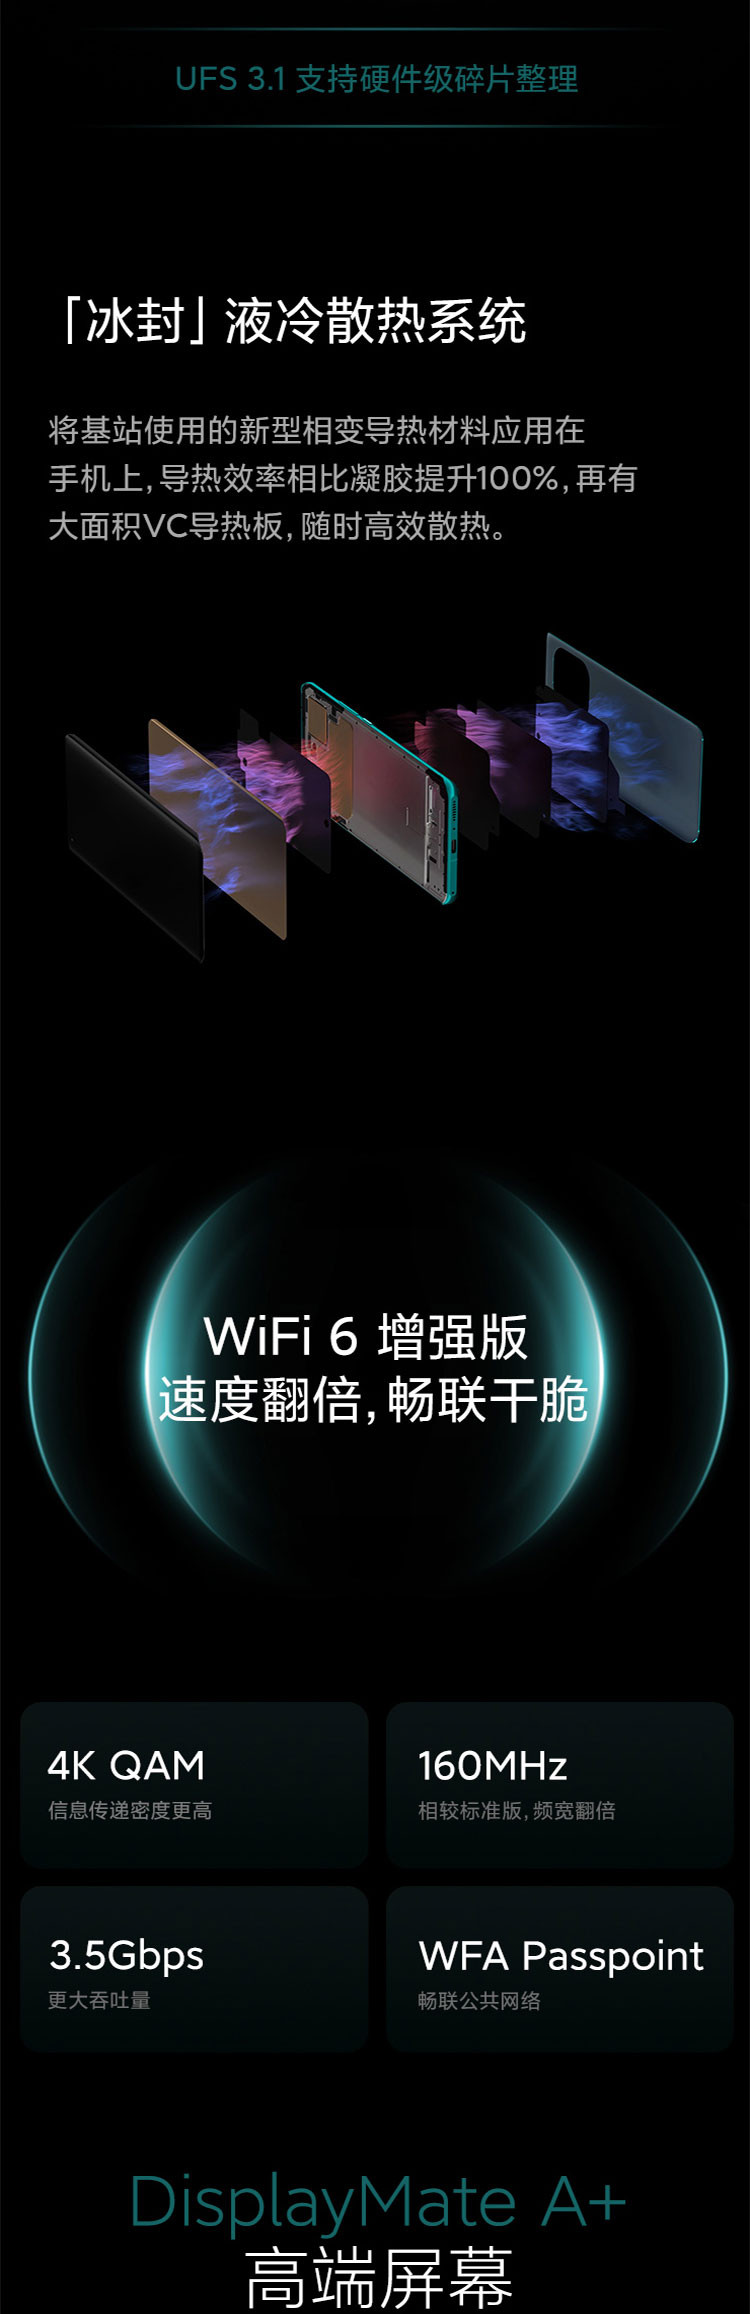 小米/MIUI 11 Pro 骁龙888 67W无线闪充 3D玻璃工艺 游戏智能5G手机